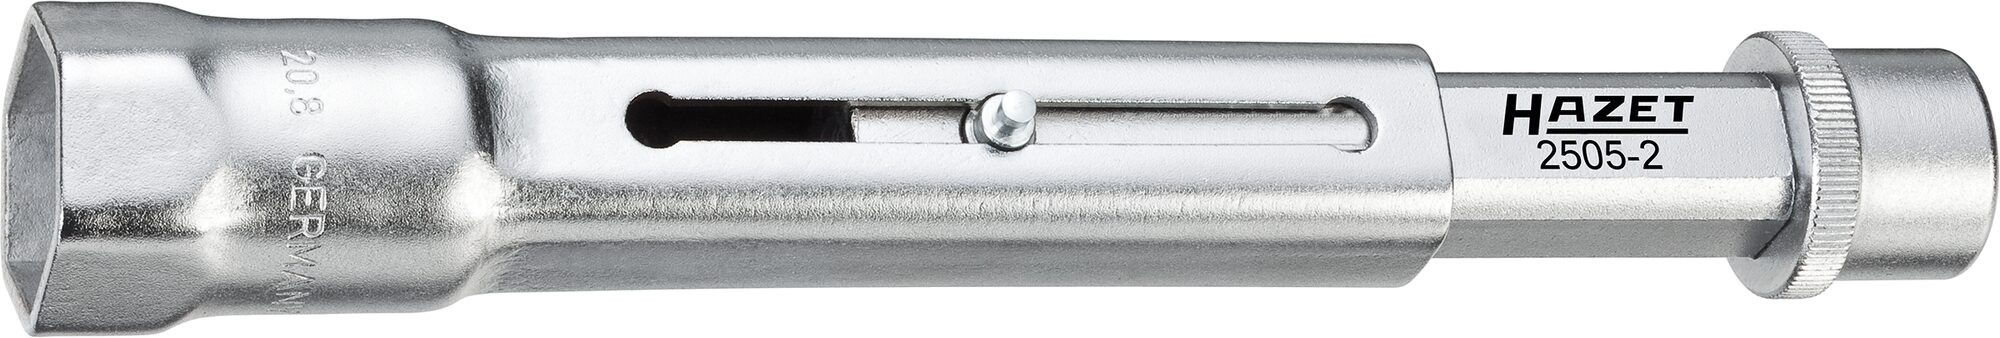 HAZET Zündkerzen-Schlüssel 2505-2 · Vierkant hohl 10 mm (3/8 Zoll) · Außen Sechskant Profil · 20.8 mm · 13/16 ?